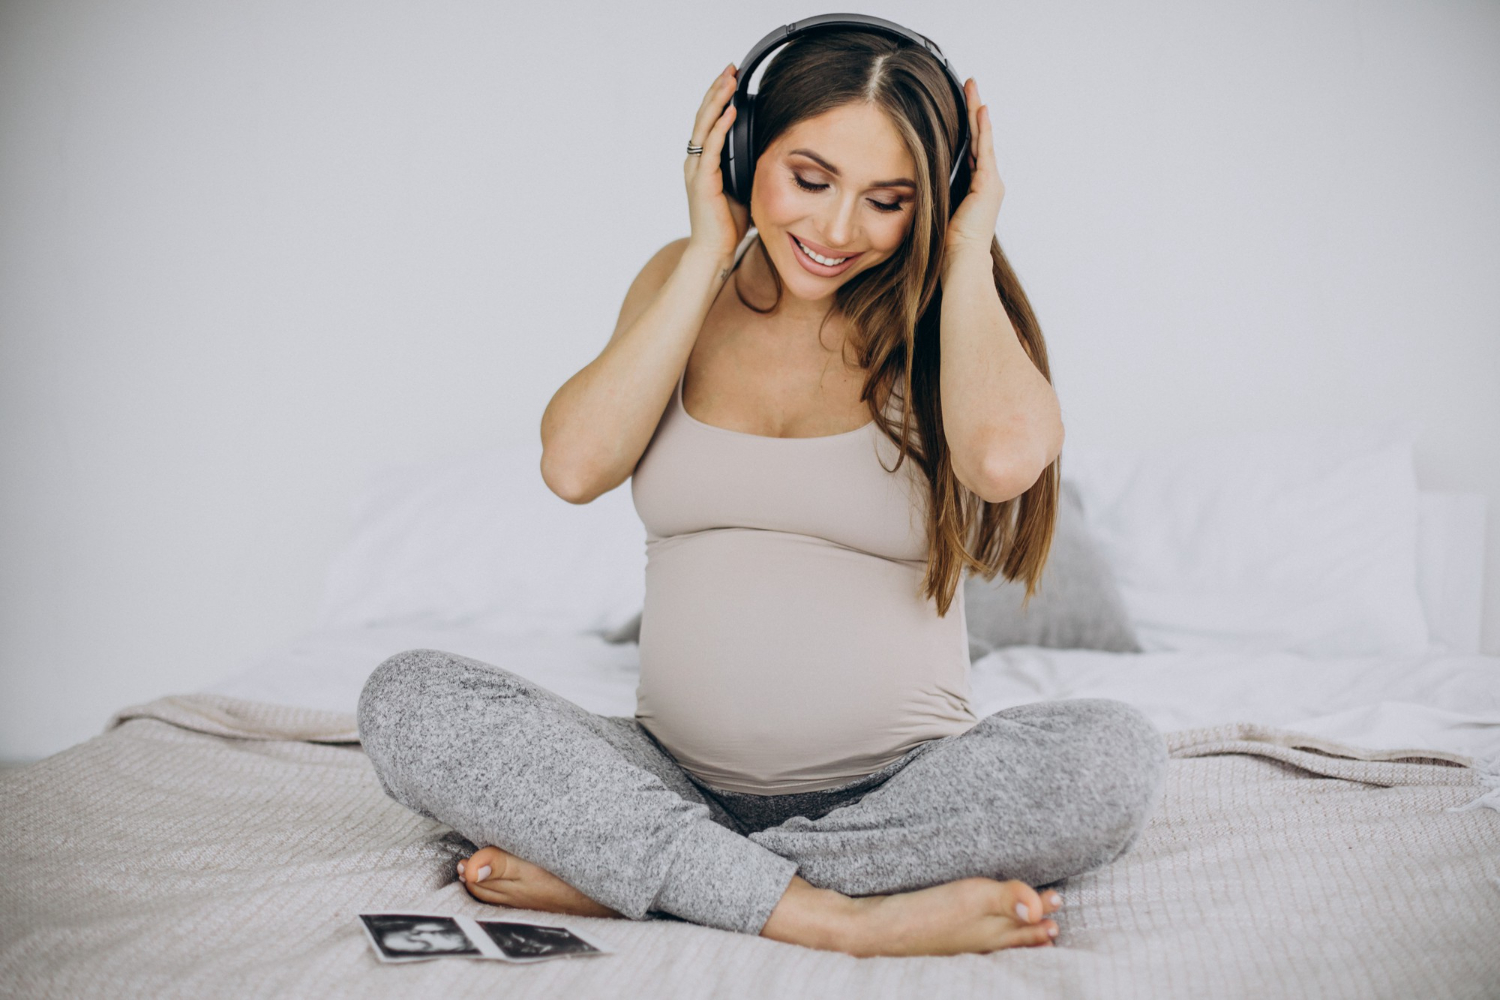 Comment la musique influence le développement du fœtus